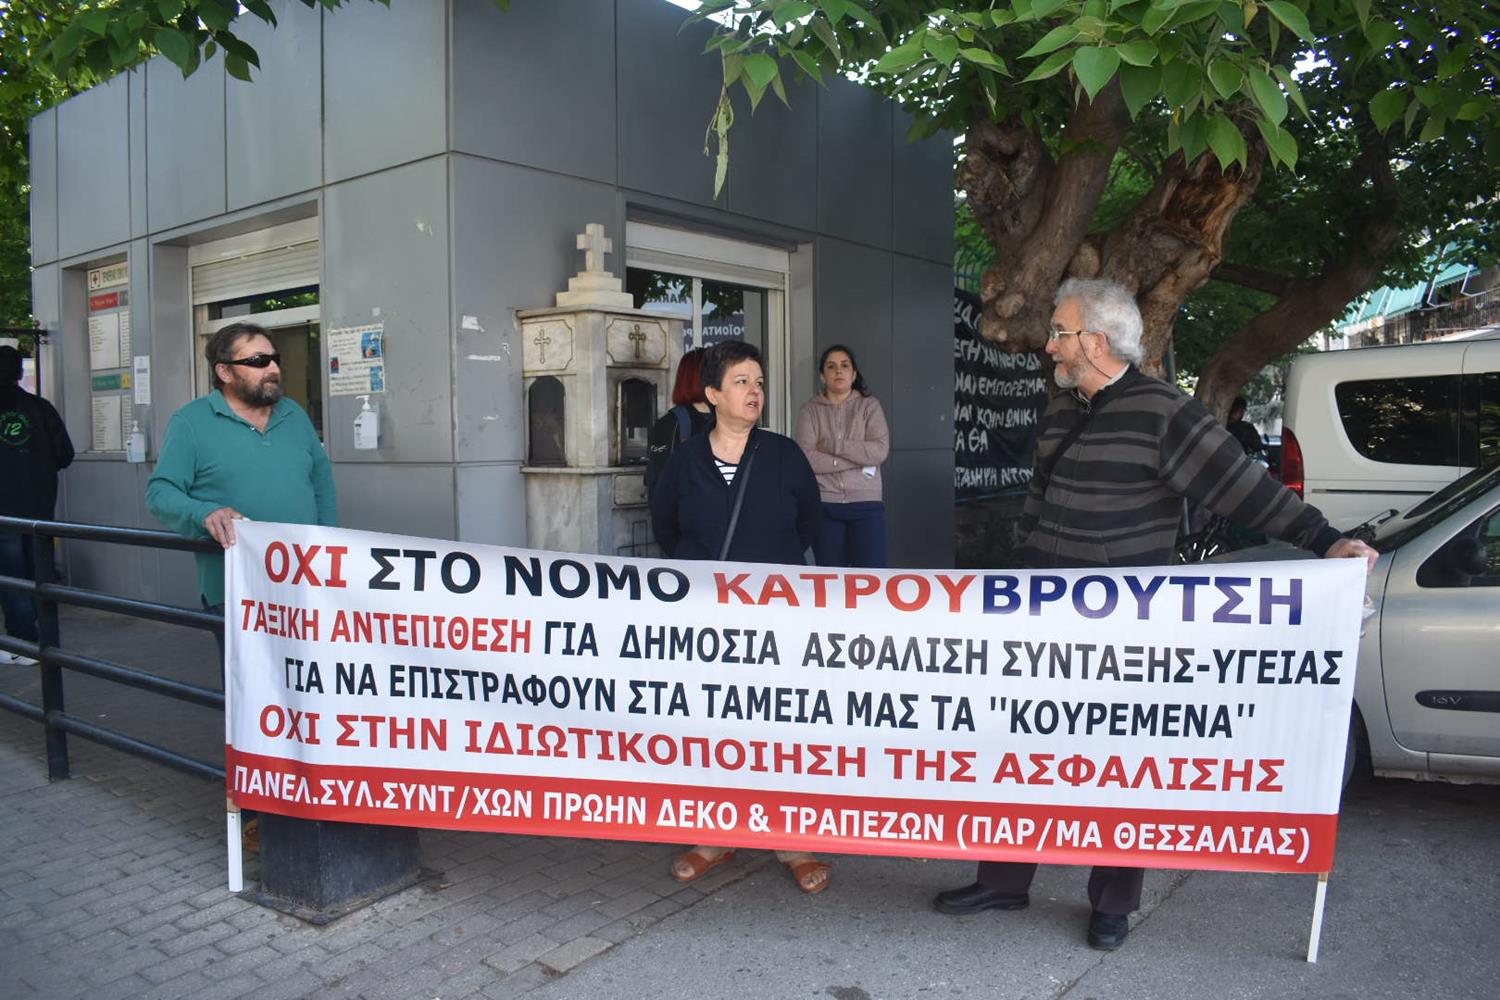 Διαμαρτυρία έξω από το Γενικό Νοσοκομείο της Λάρισας - Ζητούν μονιμοποίηση των συμβασιούχων στη δημόσια Υγεία